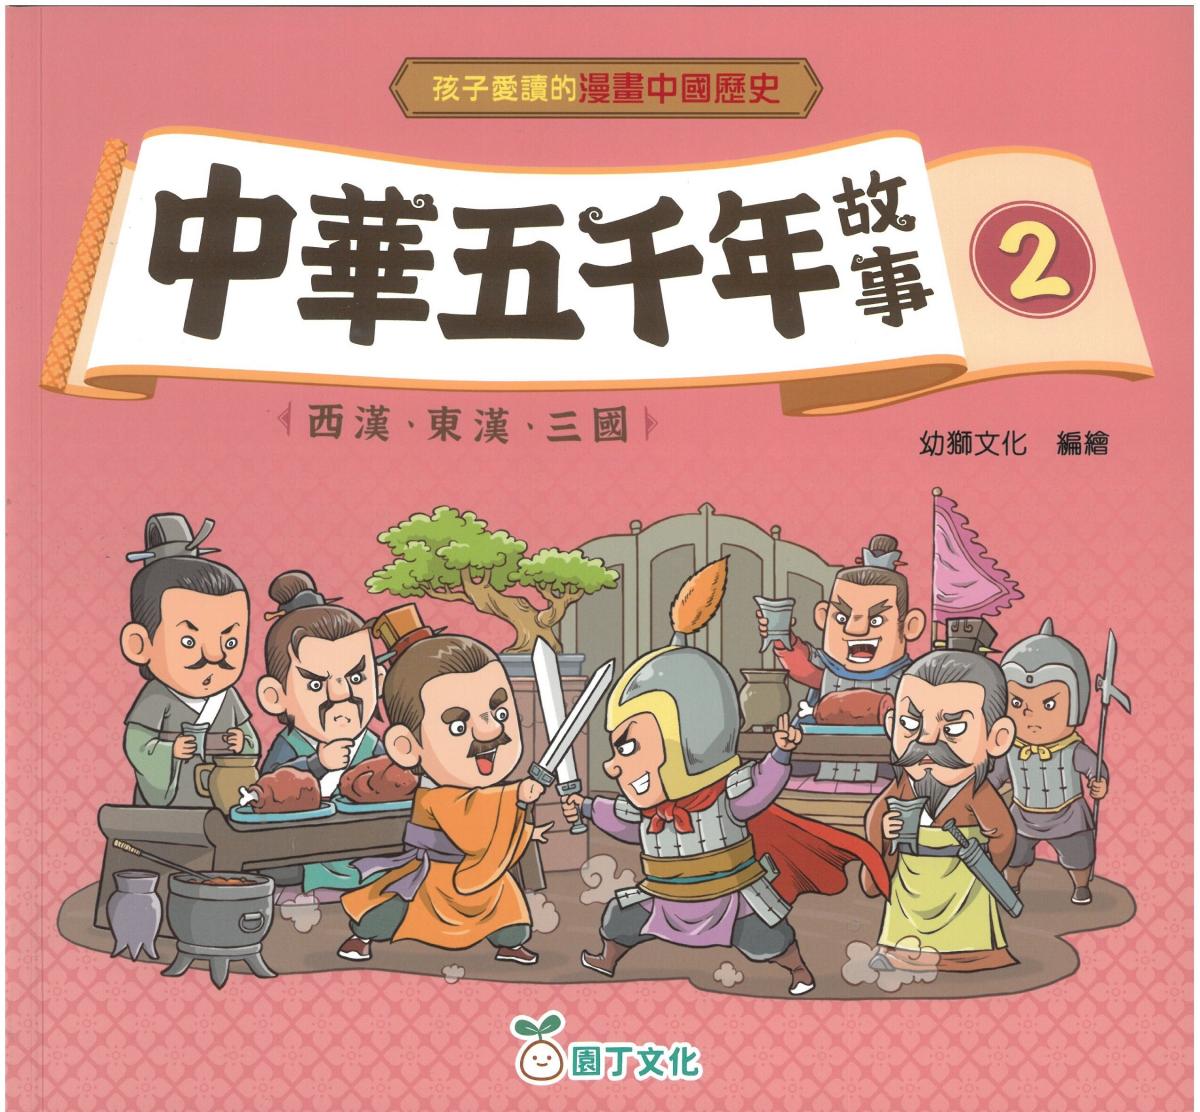 園丁文化| 中華五千年故事(一套4冊) | HKTVmall 香港最大網購平台